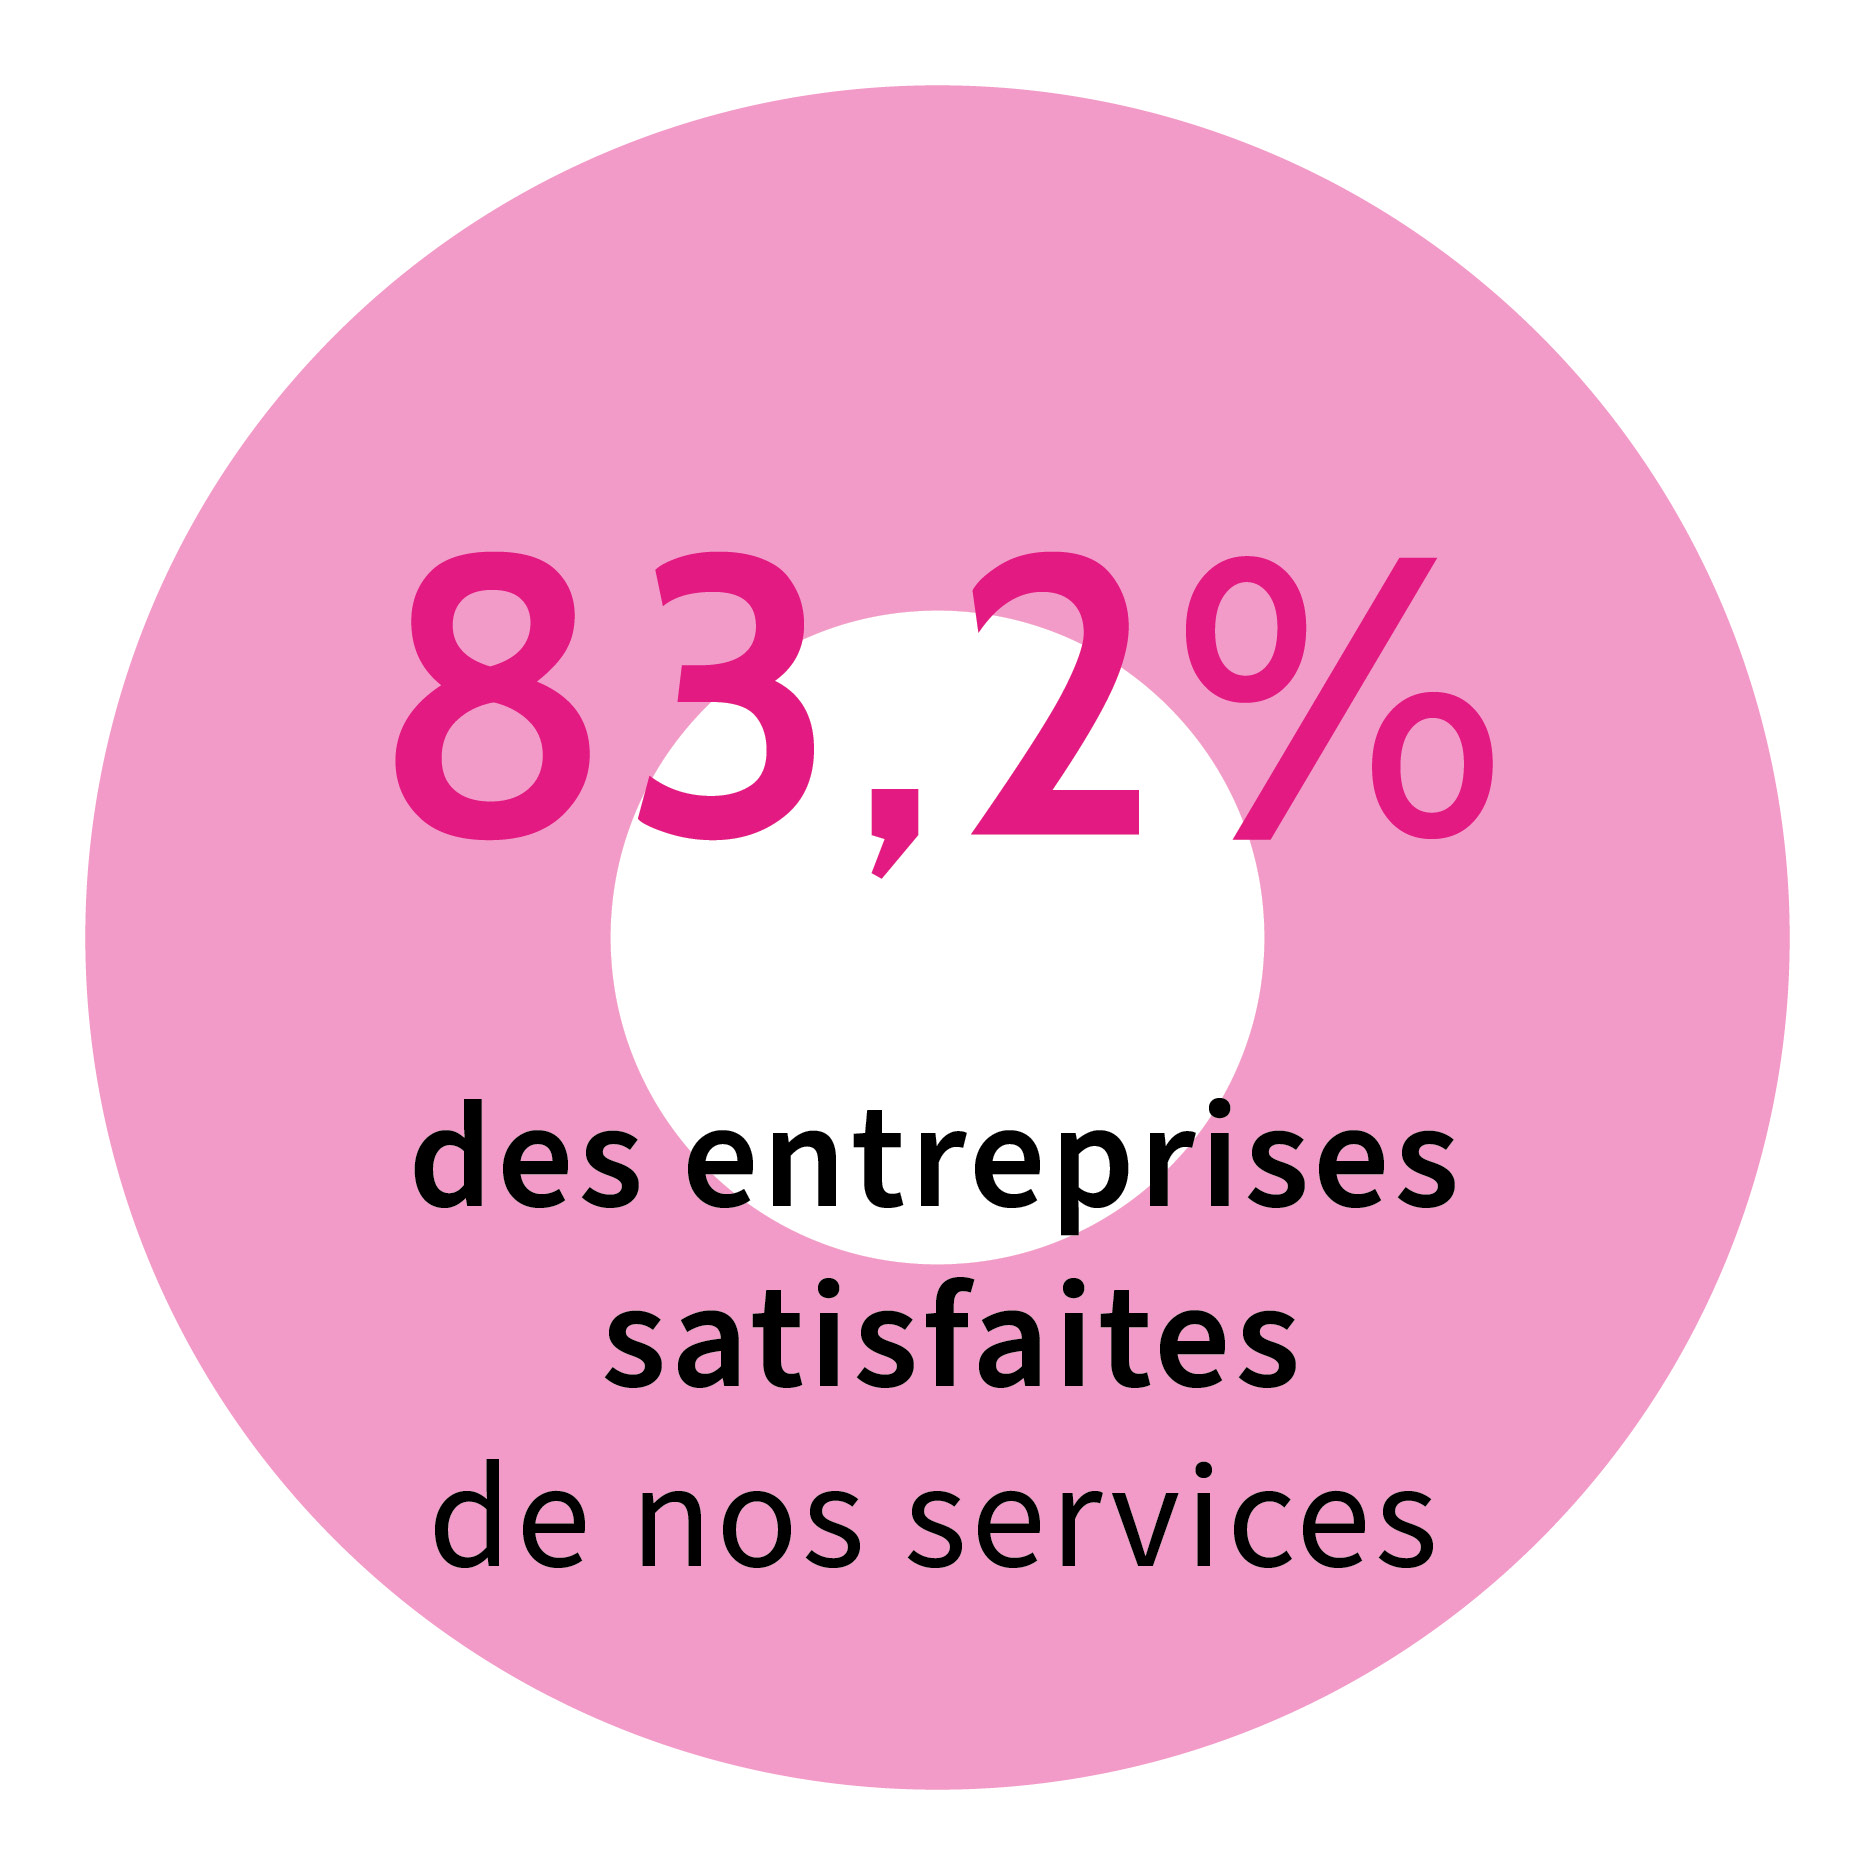 83,3% des entreprises satisfaites de nos services